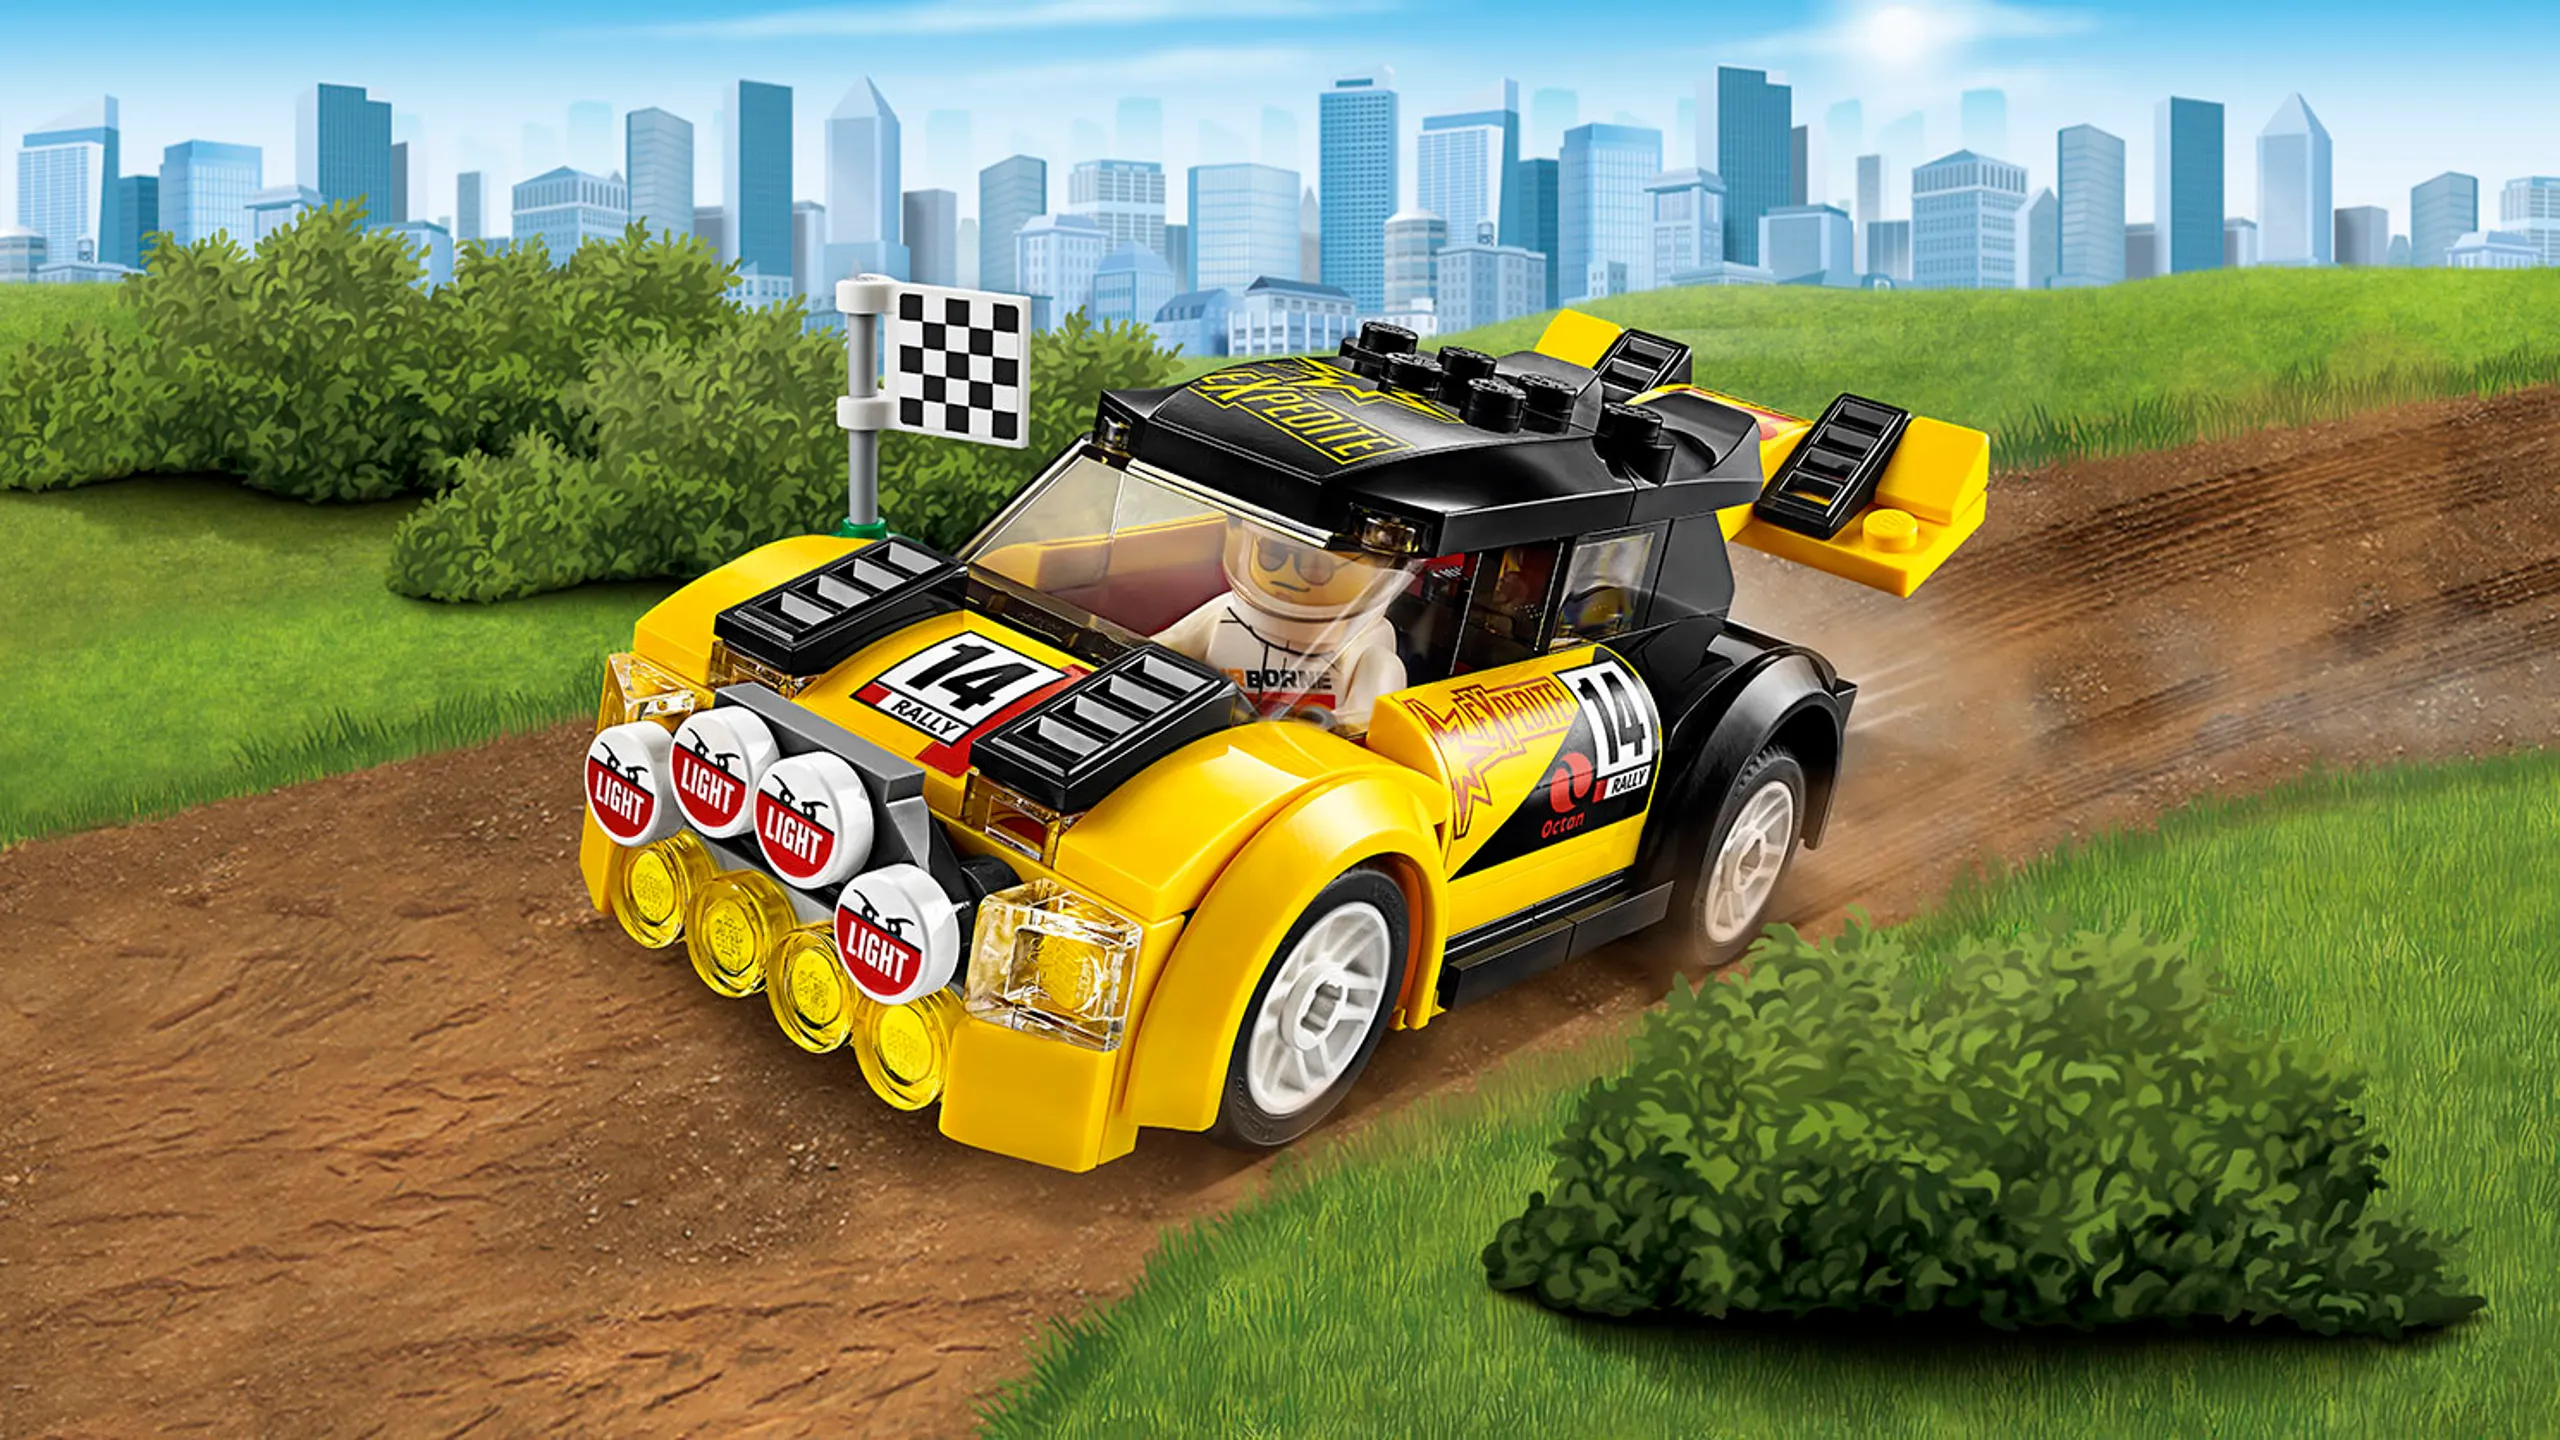 Super Veicoli LEGO City – Auto da rally 60113